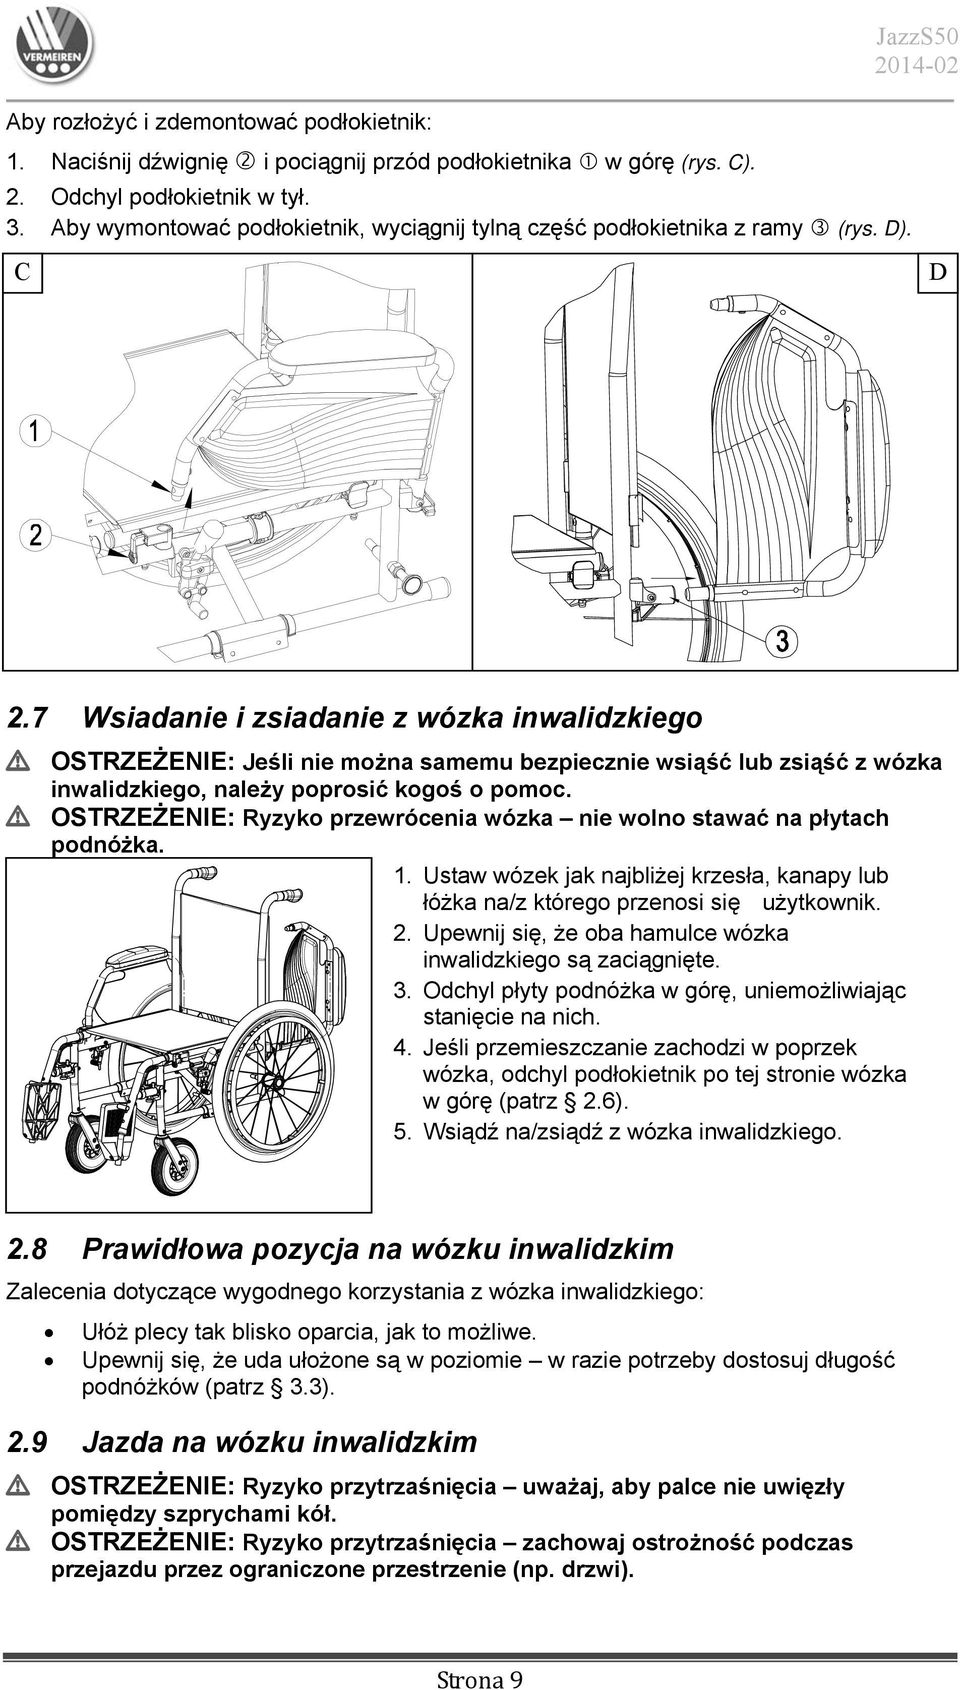 7 Wsiadanie i zsiadanie z wózka inwalidzkiego L OSTRZEŻENIE: Jeśli nie można samemu bezpiecznie wsiąść lub zsiąść z wózka inwalidzkiego, należy poprosić kogoś o pomoc.